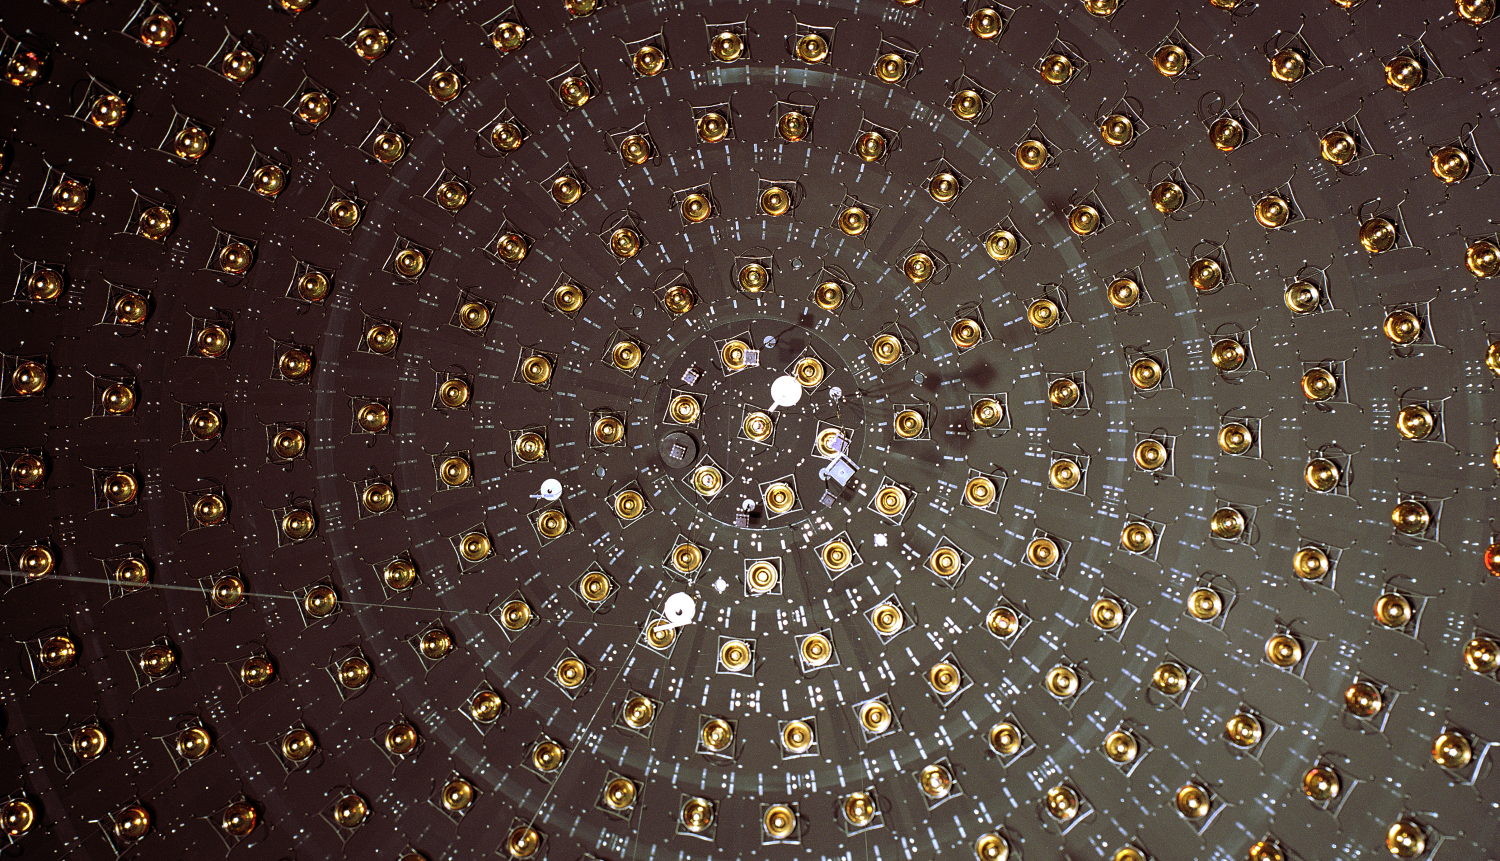 Thí nghiệm Fermilab khẳng định bằng chứng cho neutrino vô sinh